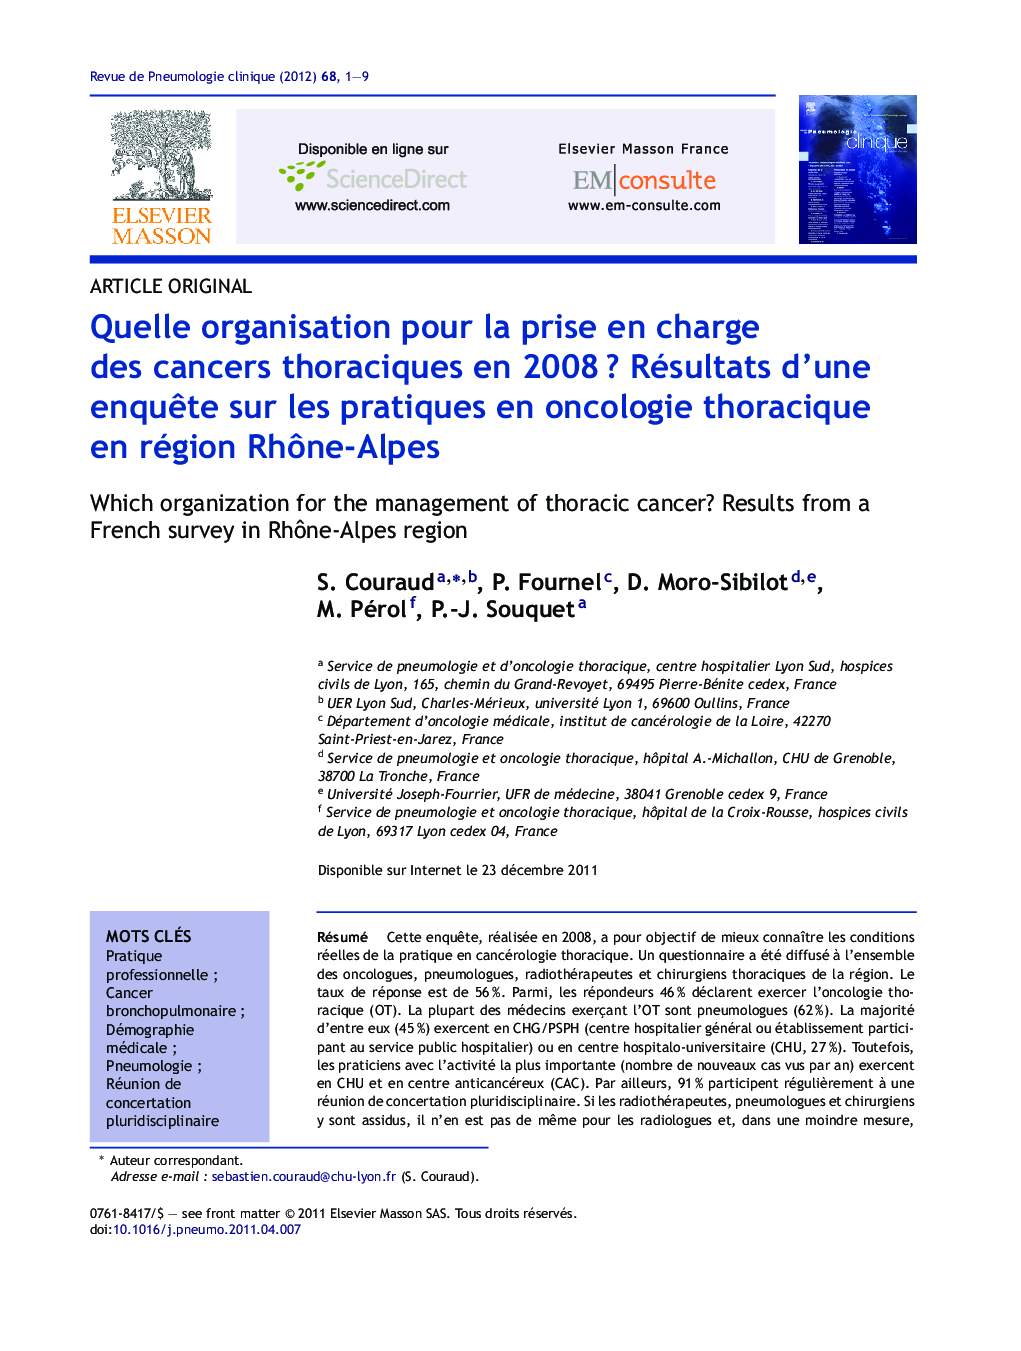 Quelle organisation pour la prise en charge des cancers thoraciques en 2008Â ? Résultats d'une enquÃªte sur les pratiques en oncologie thoracique en région RhÃ´ne-Alpes